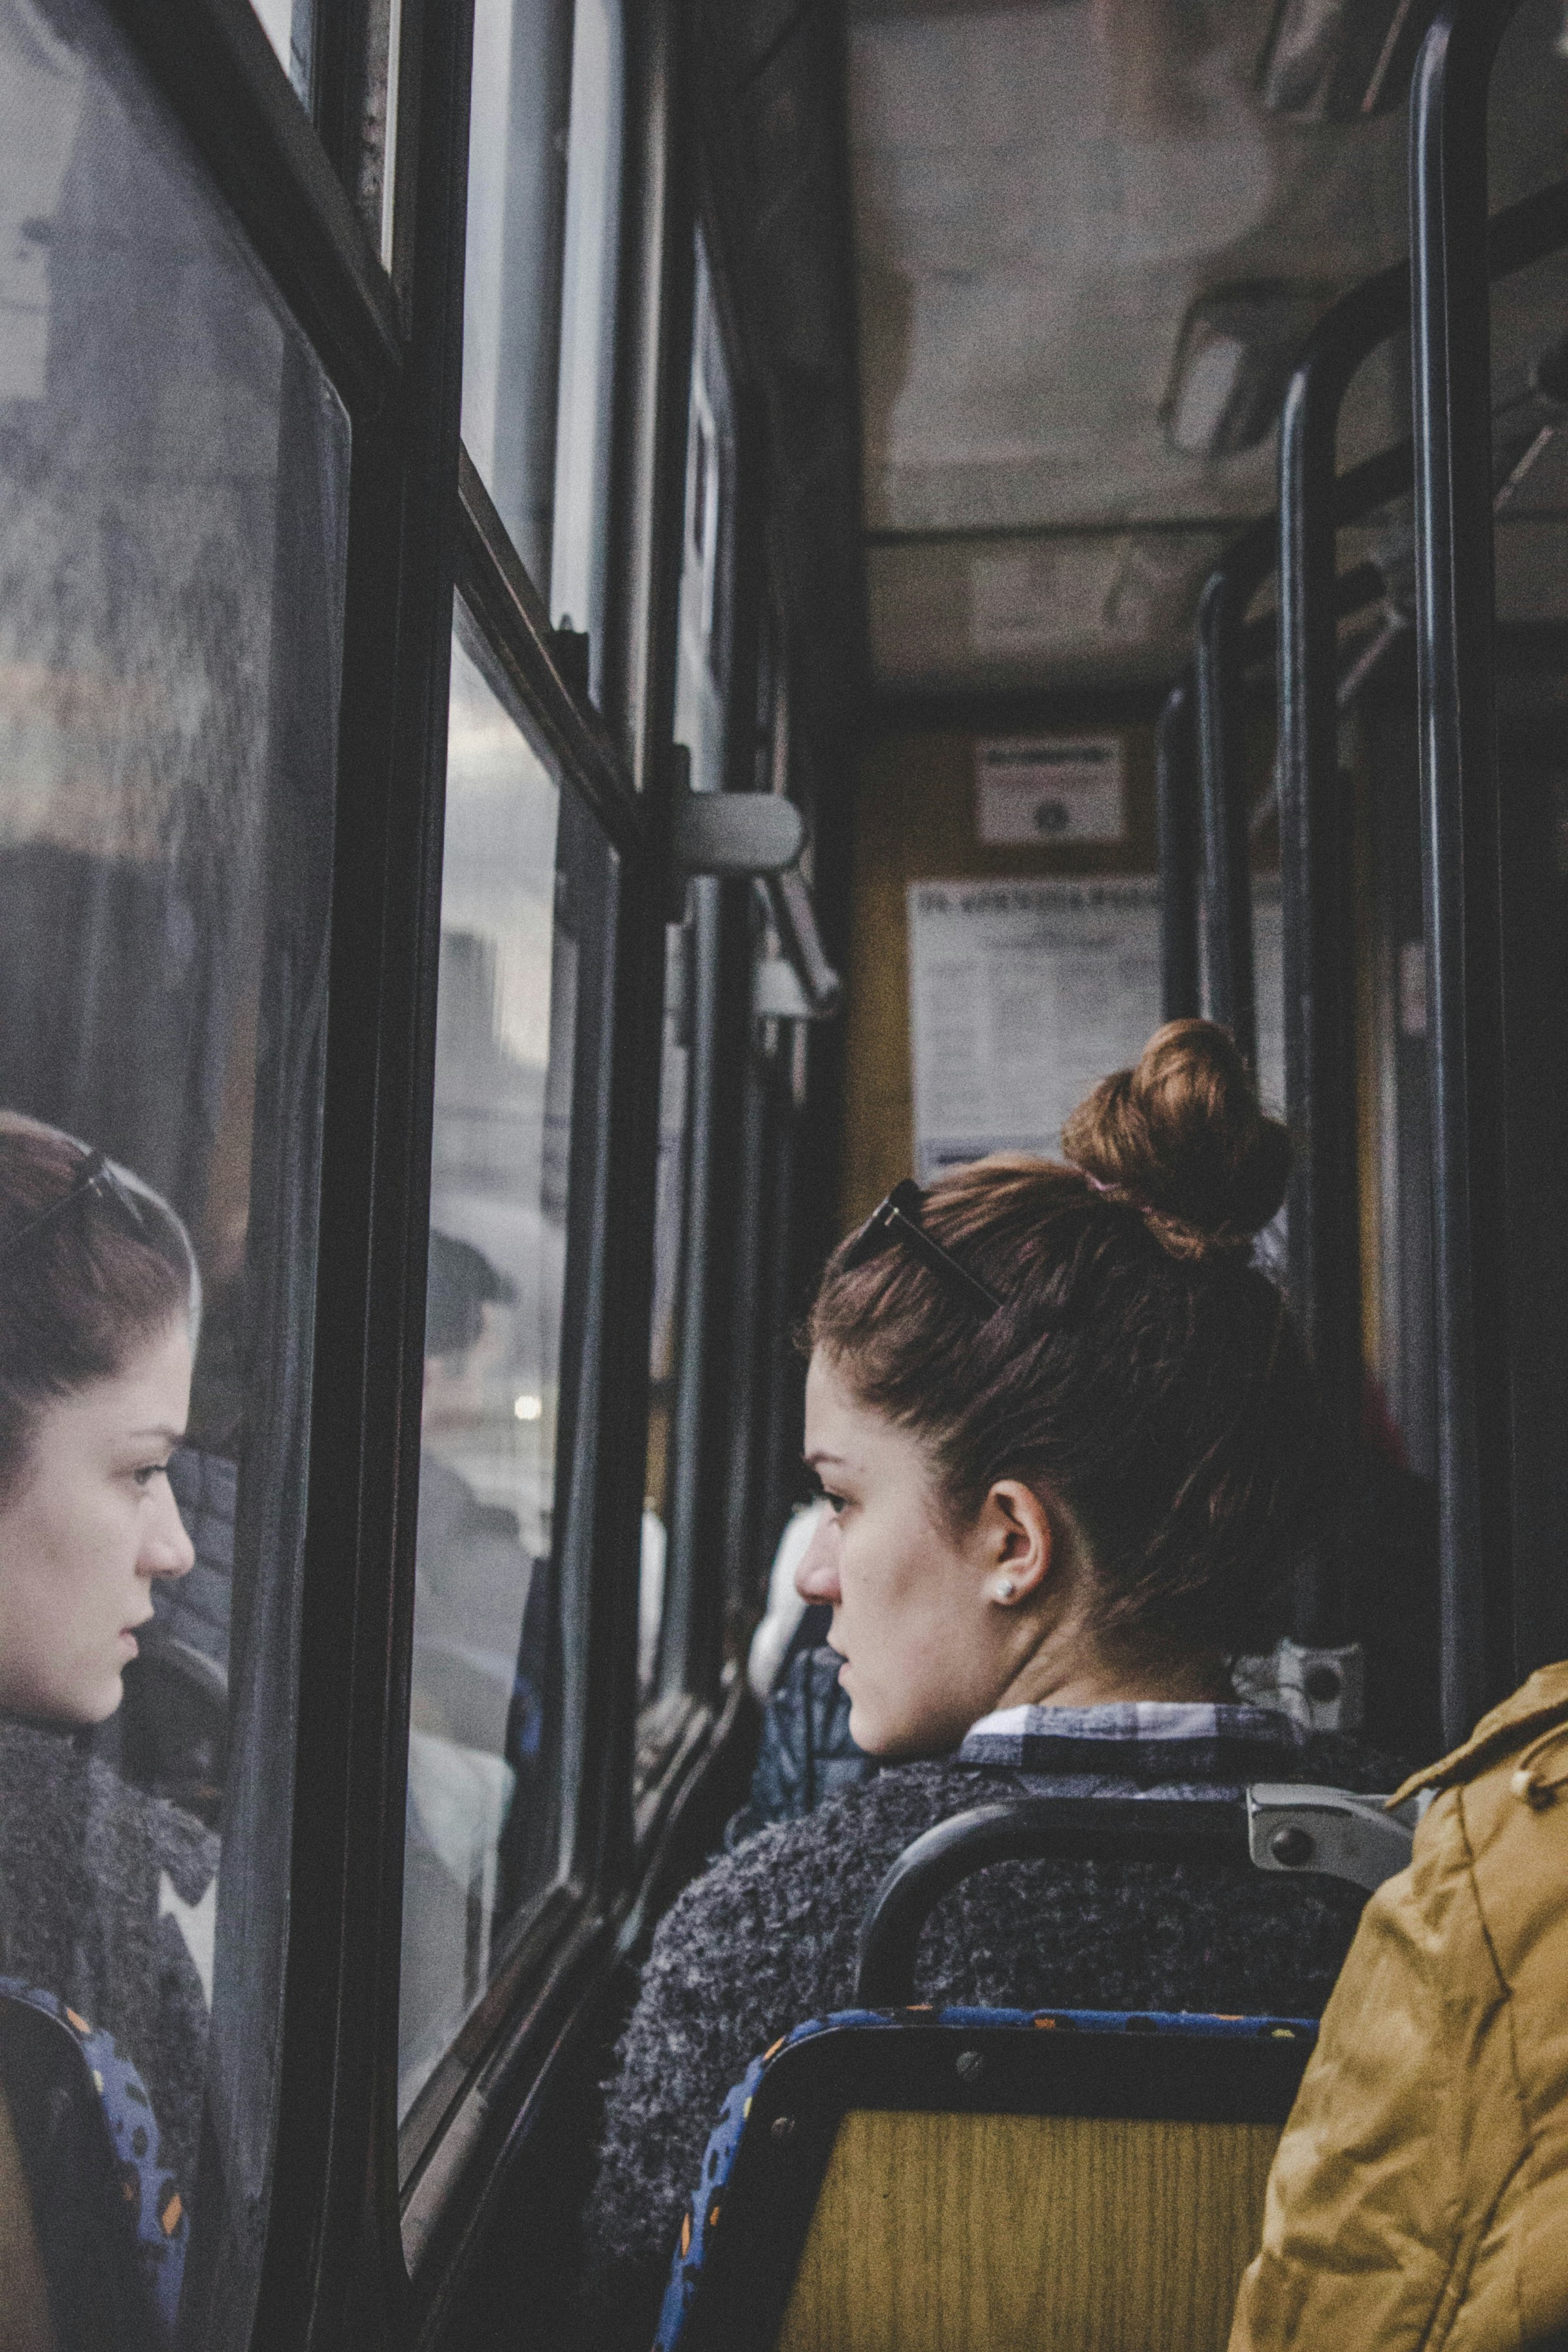 Une femme regardant par la fenêtre d'un bus | Source : Unsplash